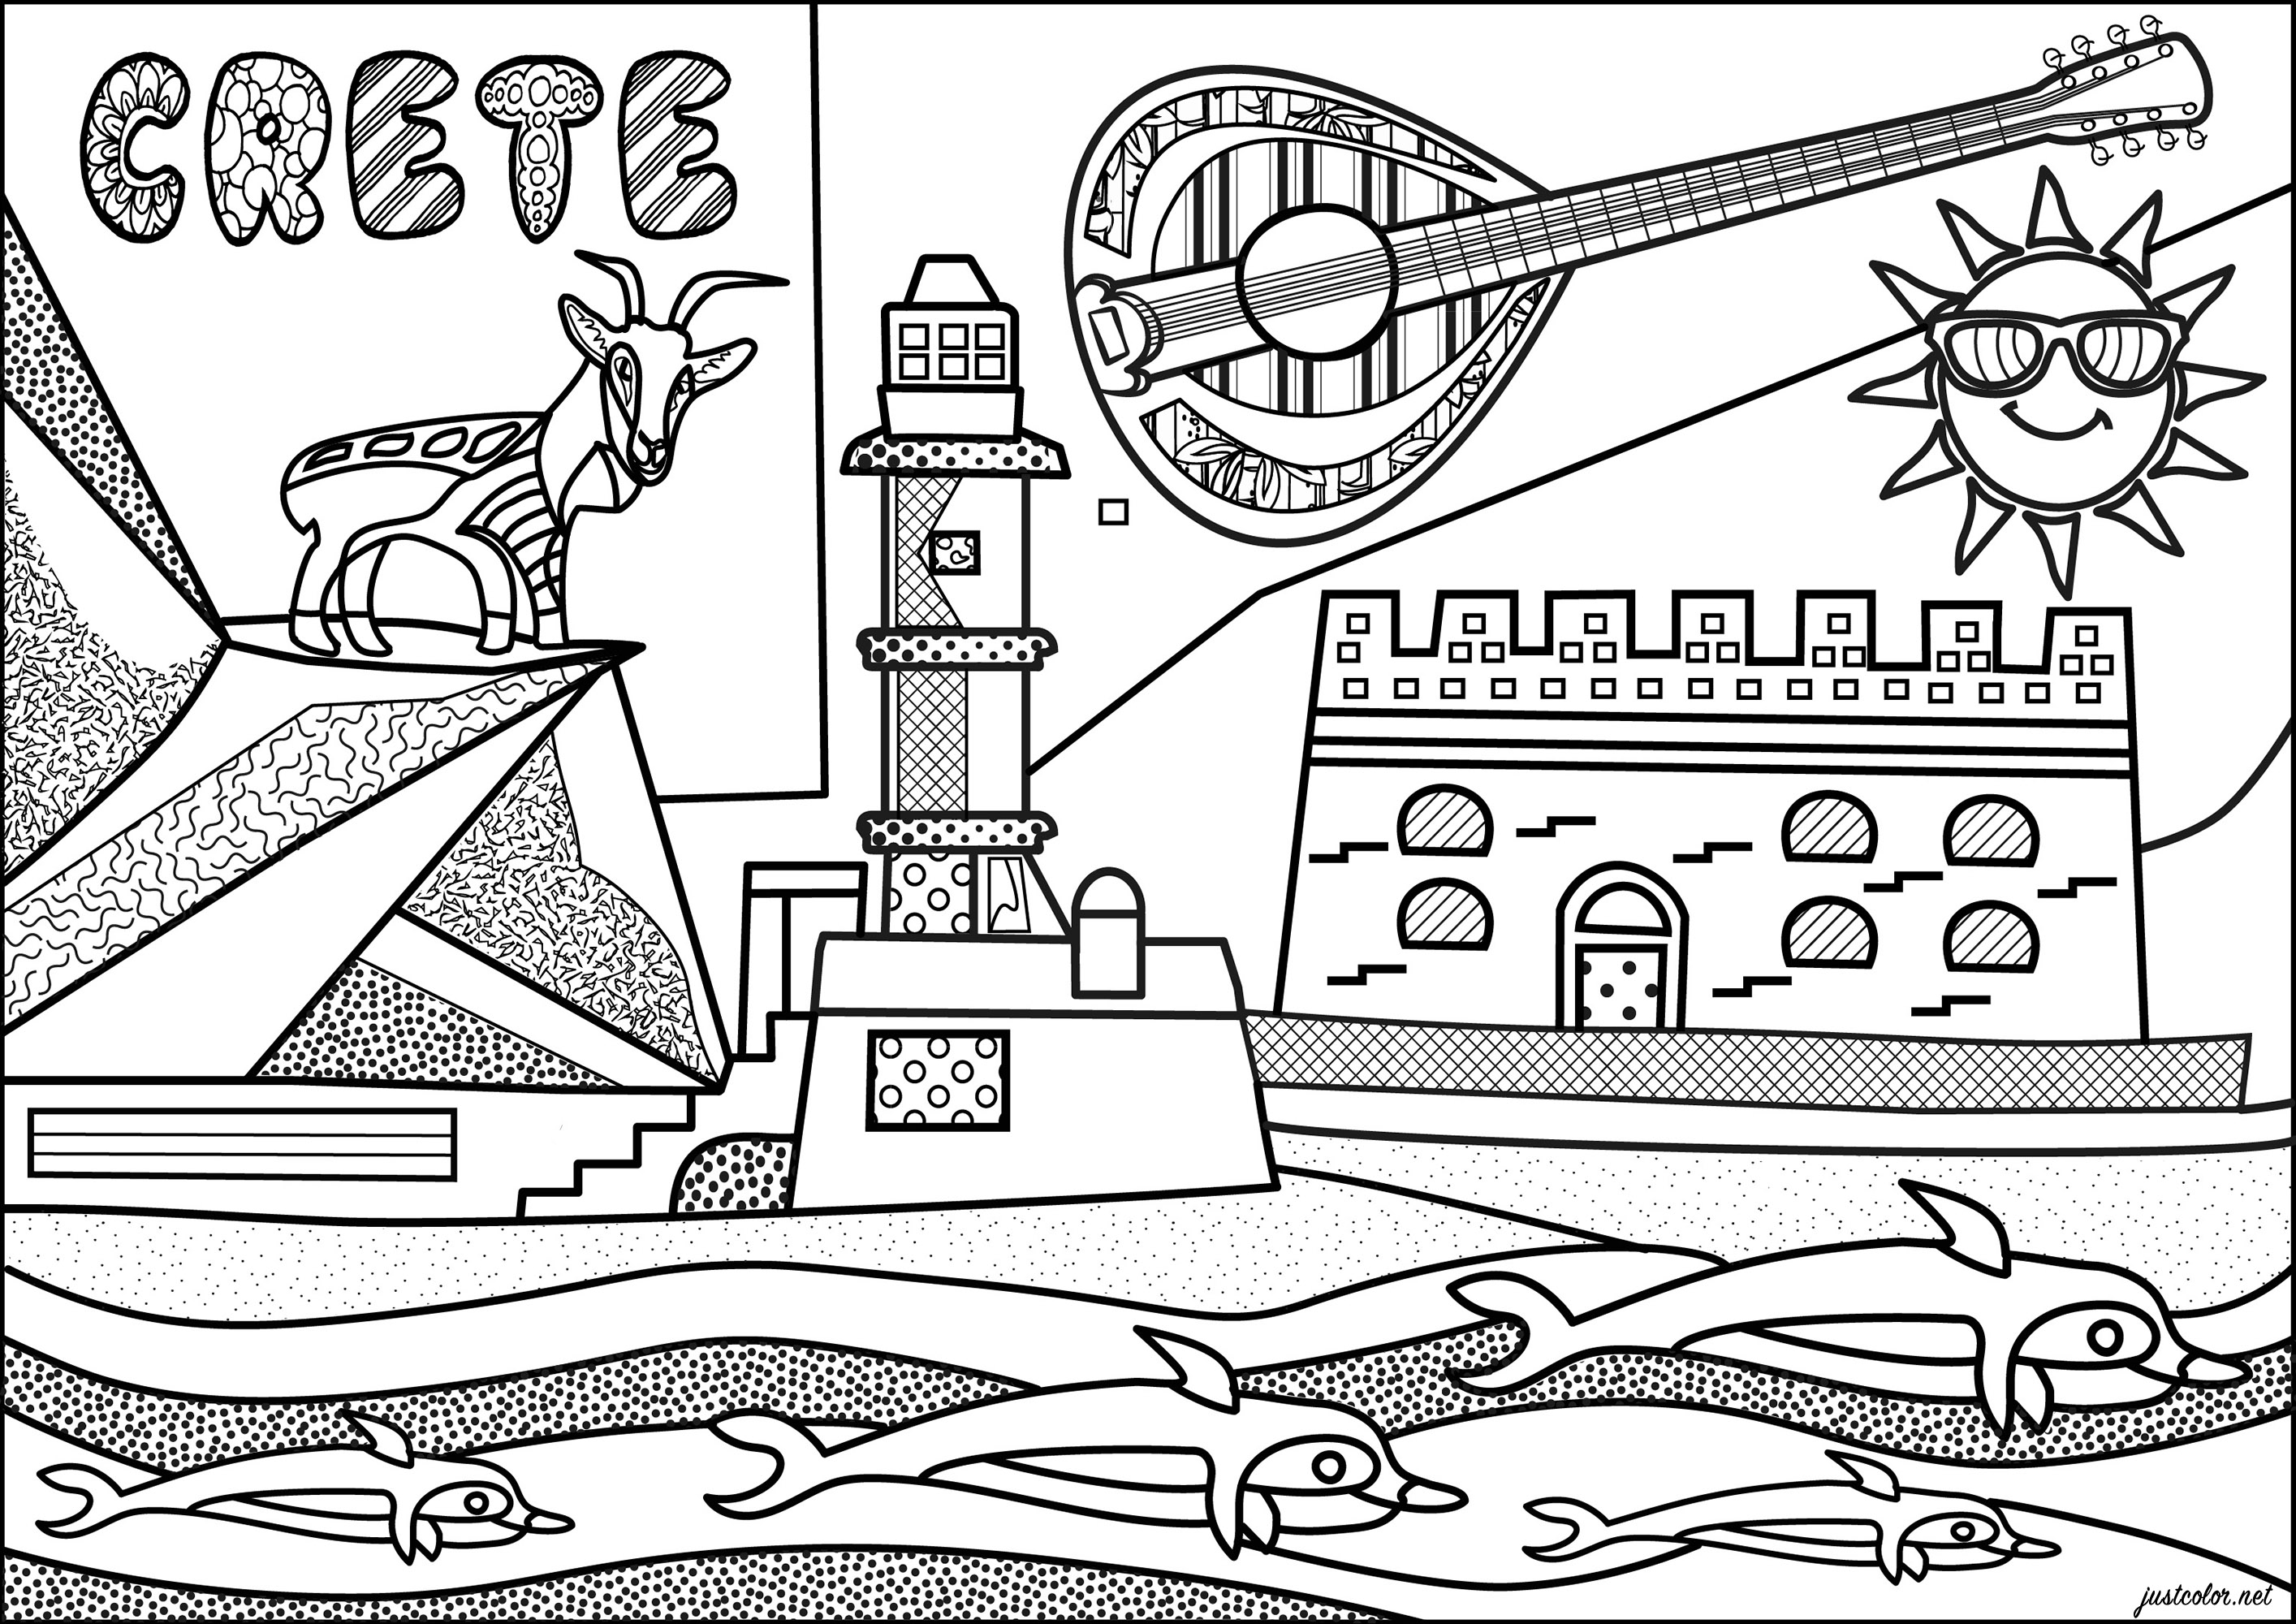 Coloreado inspirado en la isla griega de Creta, con varios monumentos típicos. Esta página para colorear muestra la fortaleza de Heraklion, el faro egipcio de Chania y una famosa cabra Kri-kri.Una ilustración original inspirada en el estilo 'Naïve art', Artista : Morgan